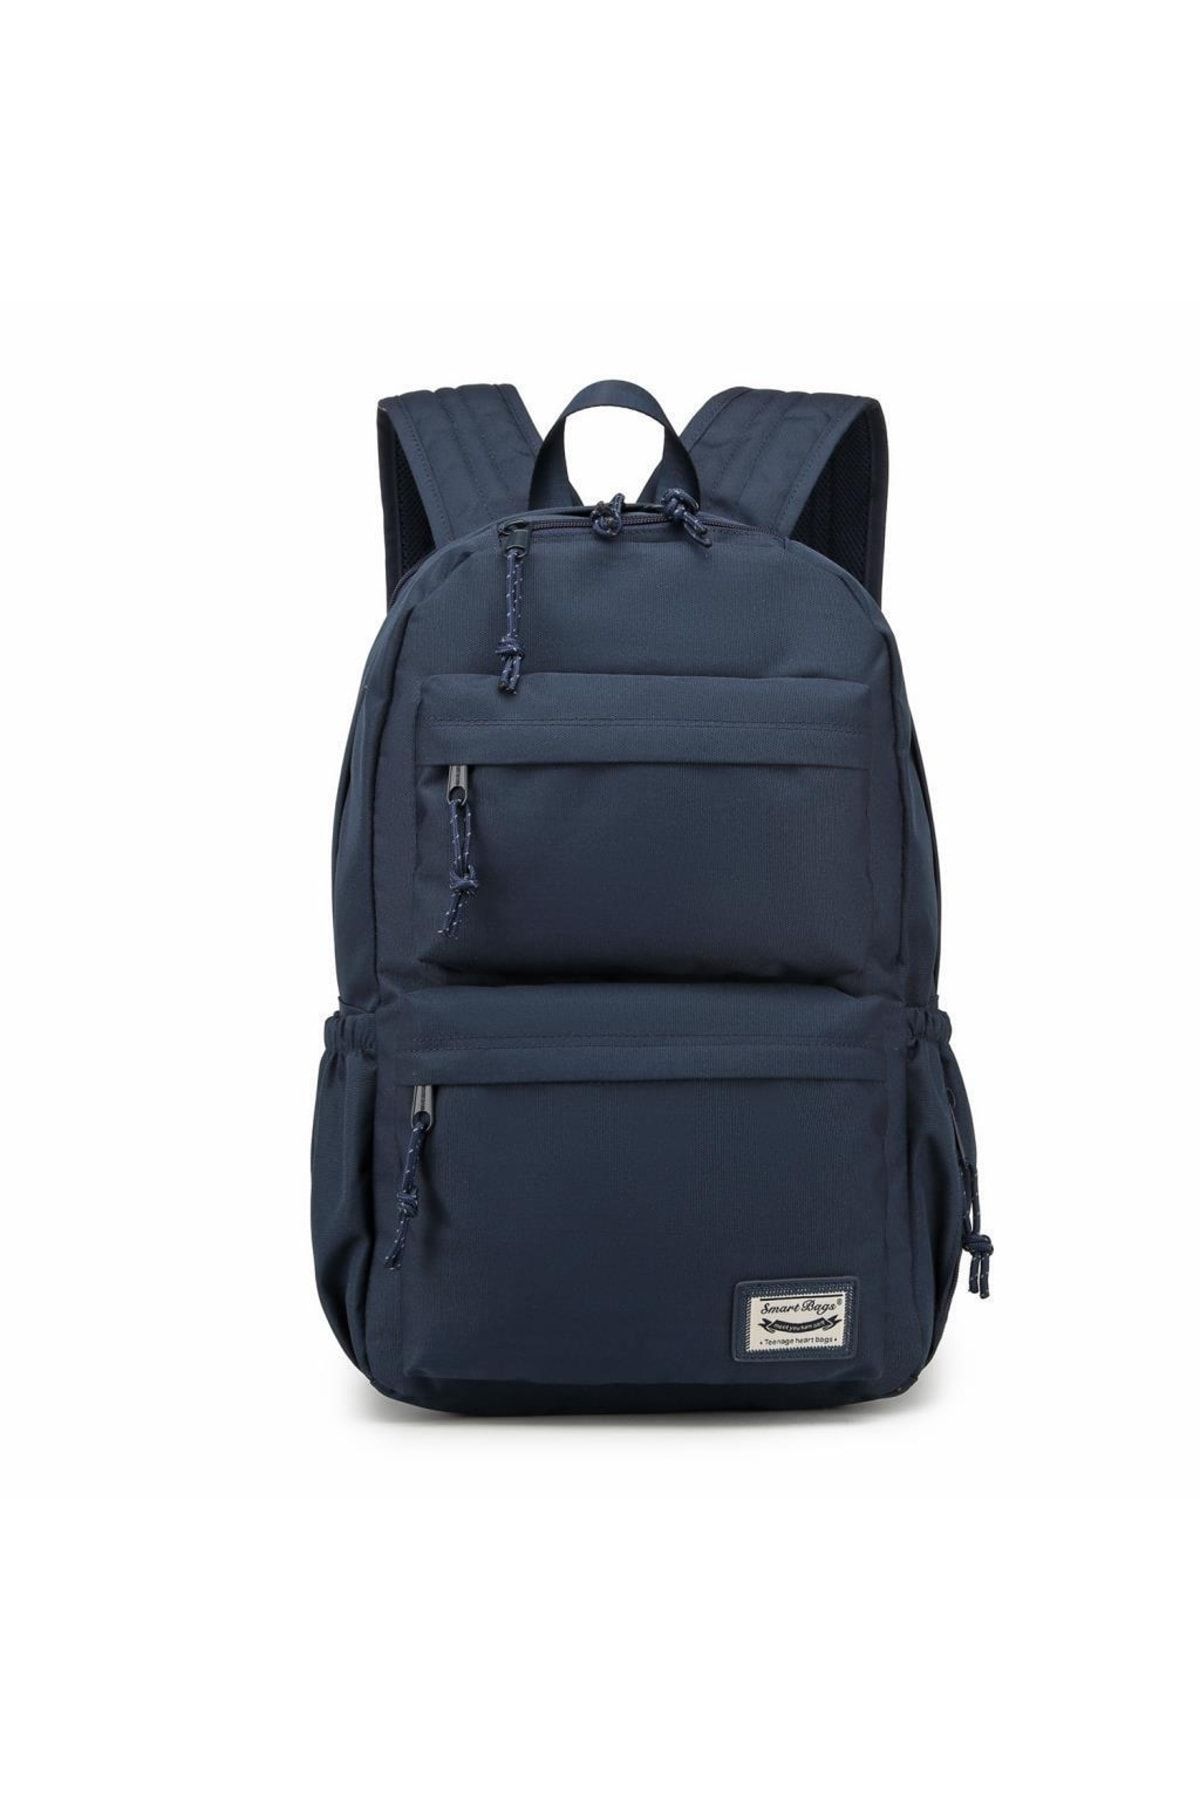 Smart Bags Sırt Çantası Okul Boyu Laptop Gözlü 3154